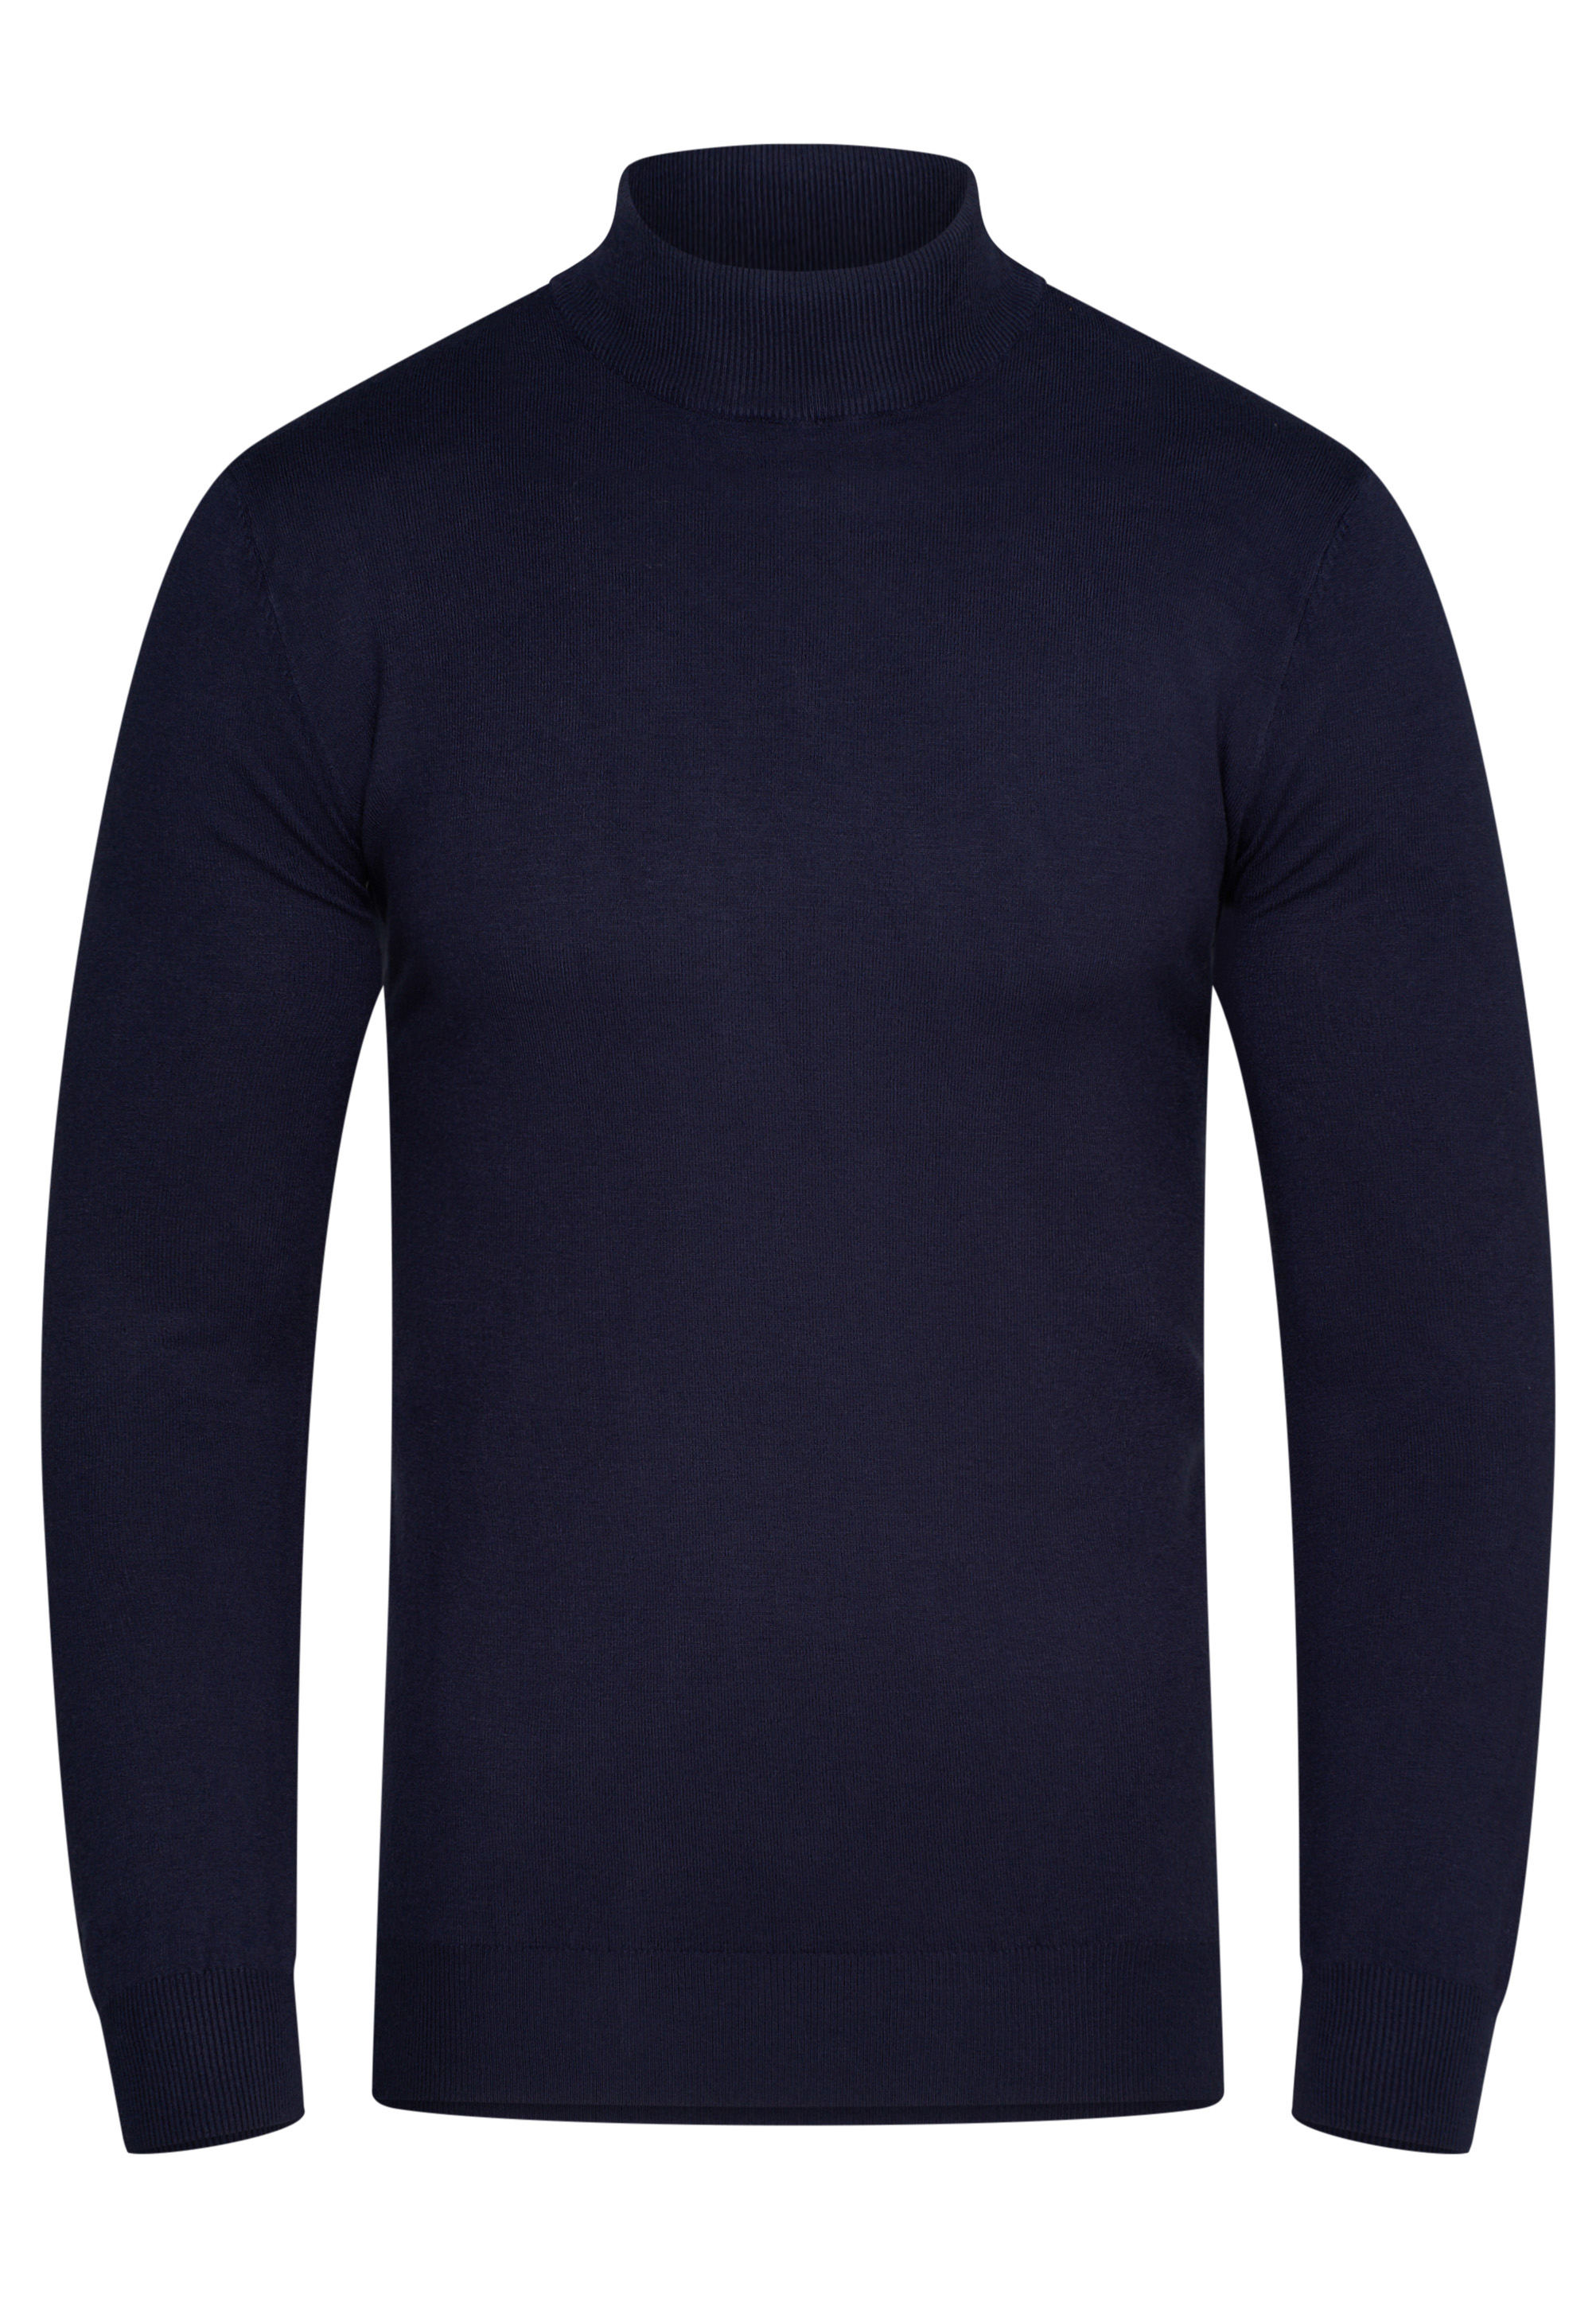 Пуловер behype MKBONI, темно синий пуловер behype mkboni серый